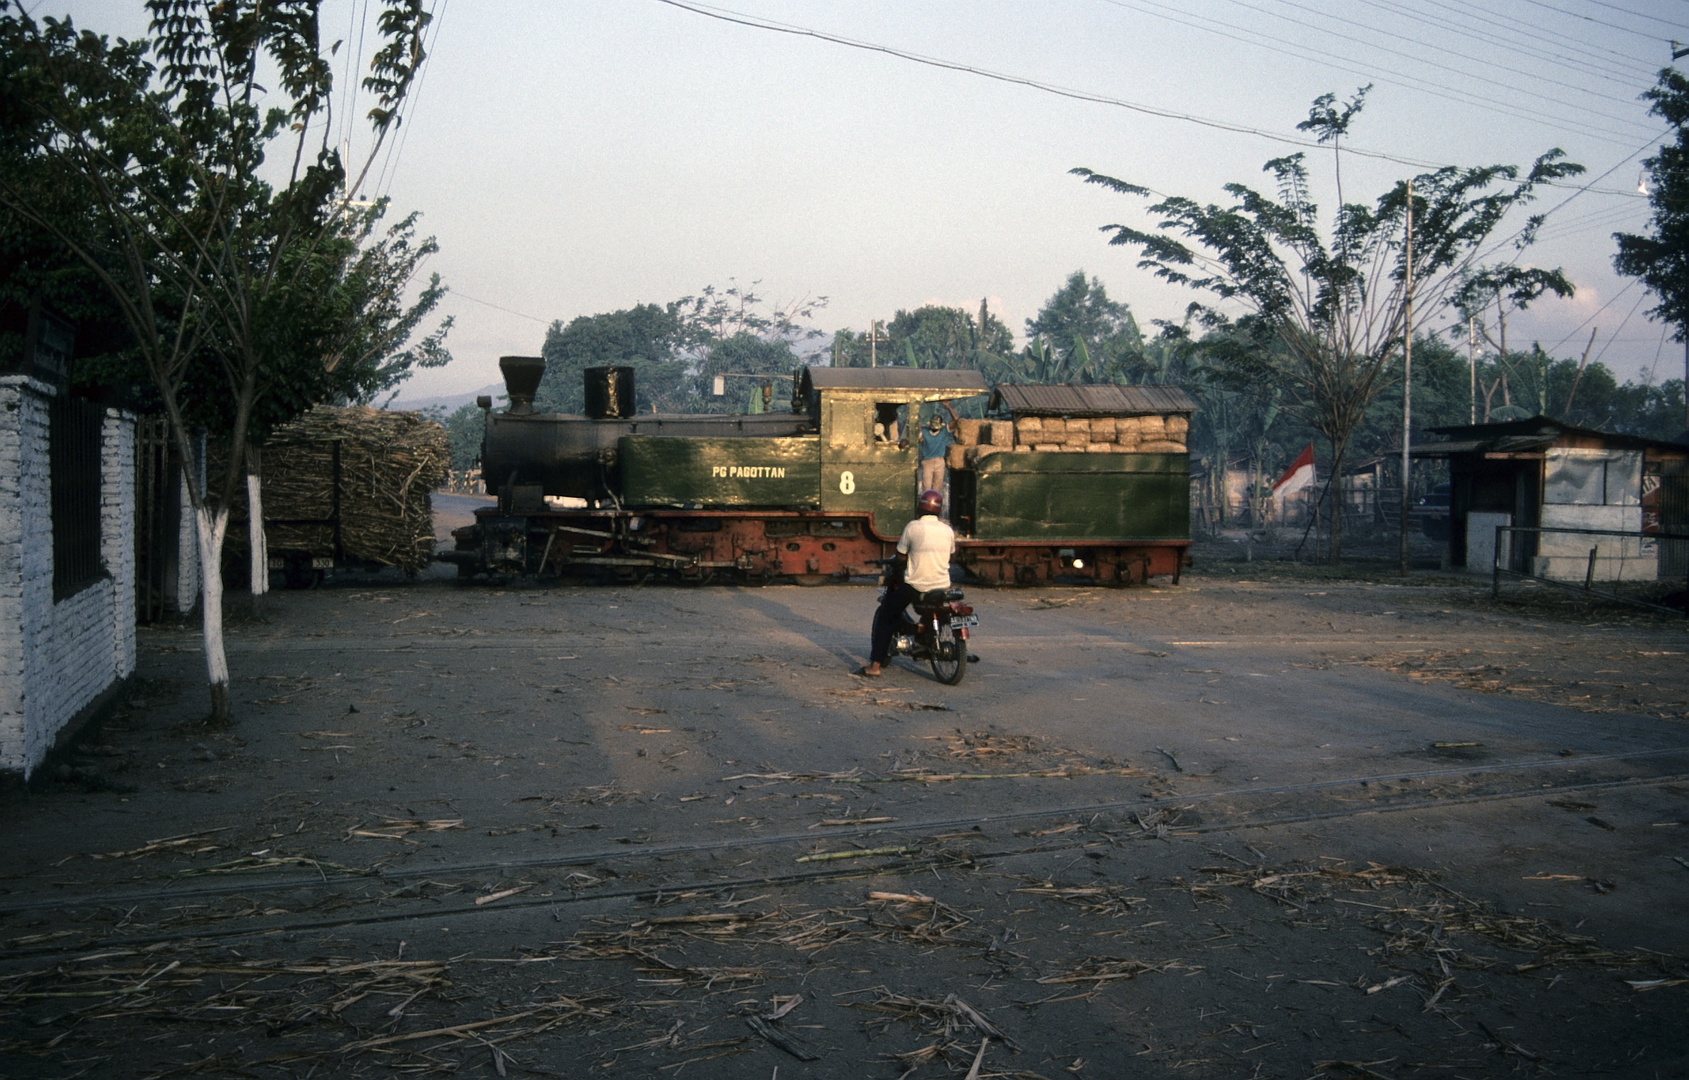 Zuckerfabrik PG Pagottan, Madiun (Java , Indonesien), August 1992